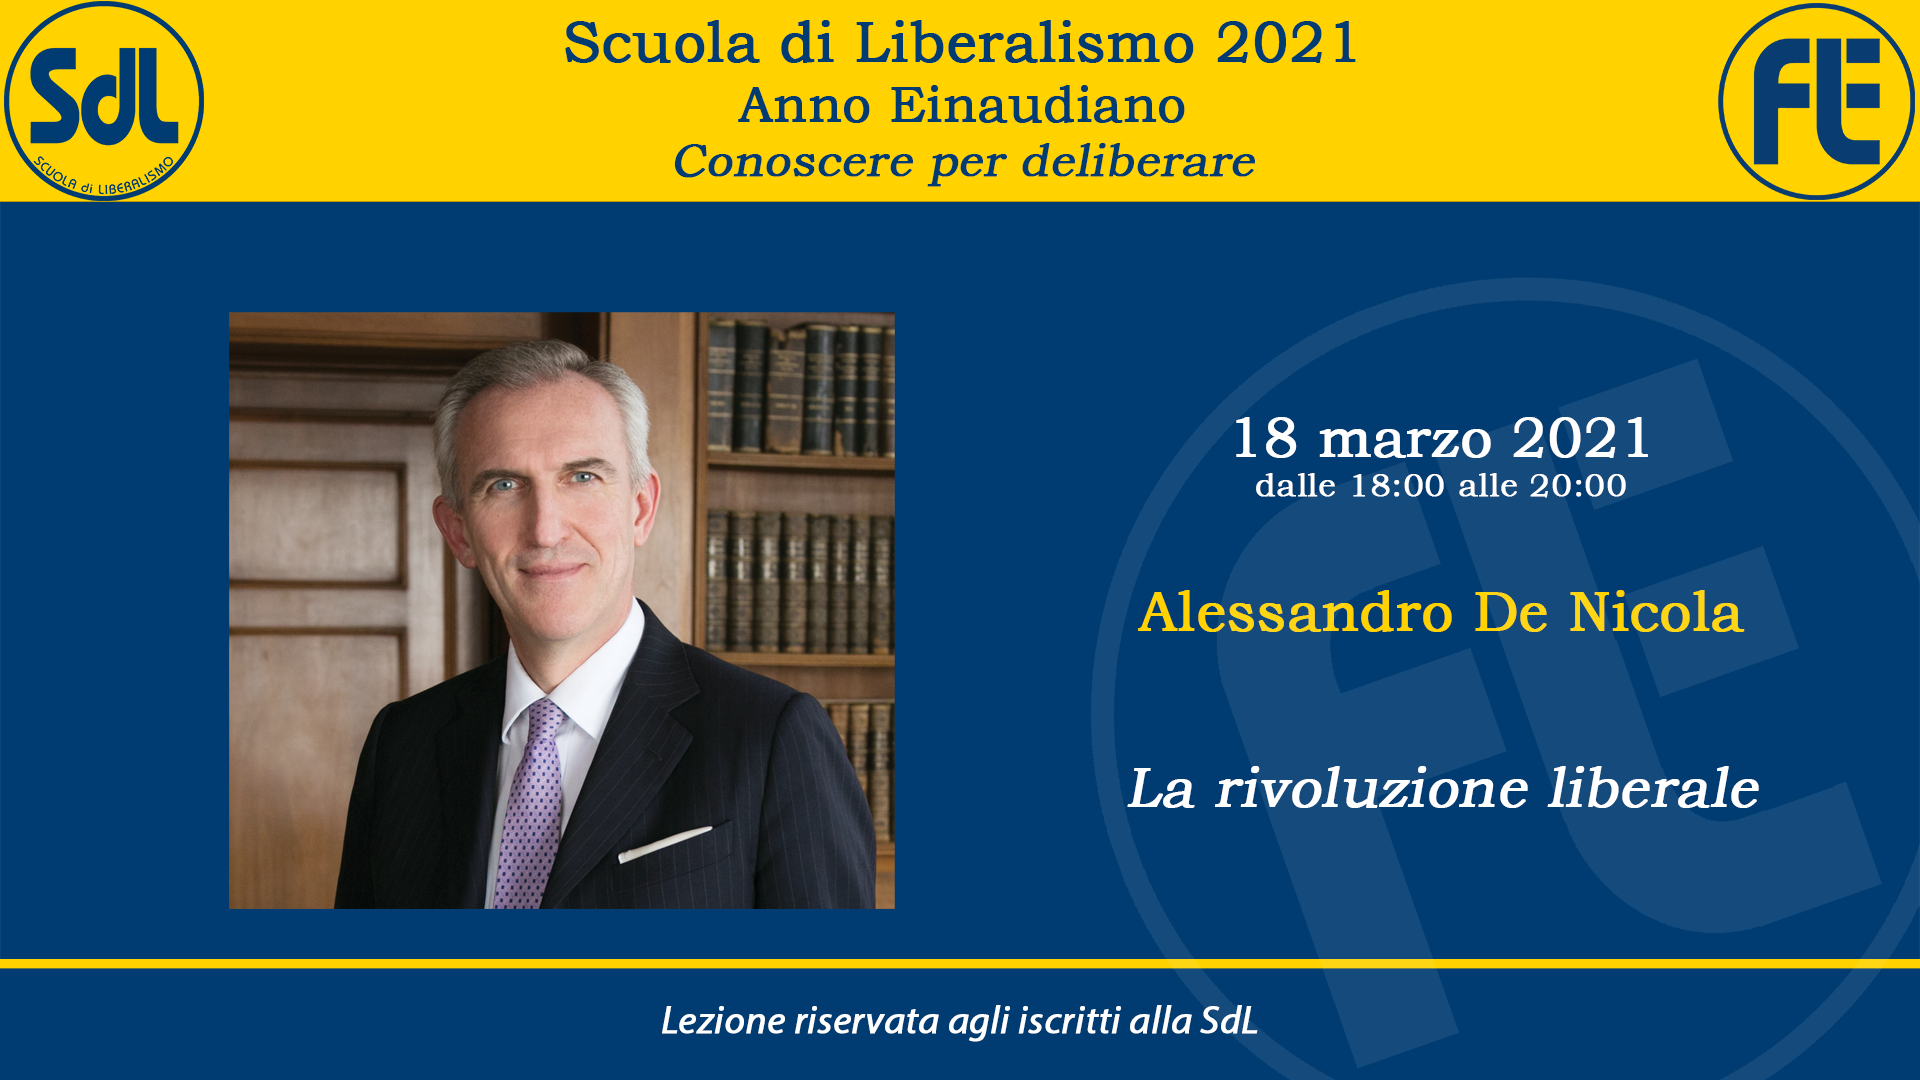 Scuola di Liberalismo 2021 – Alessandro De Nicola sul tema “La rivoluzione liberale”